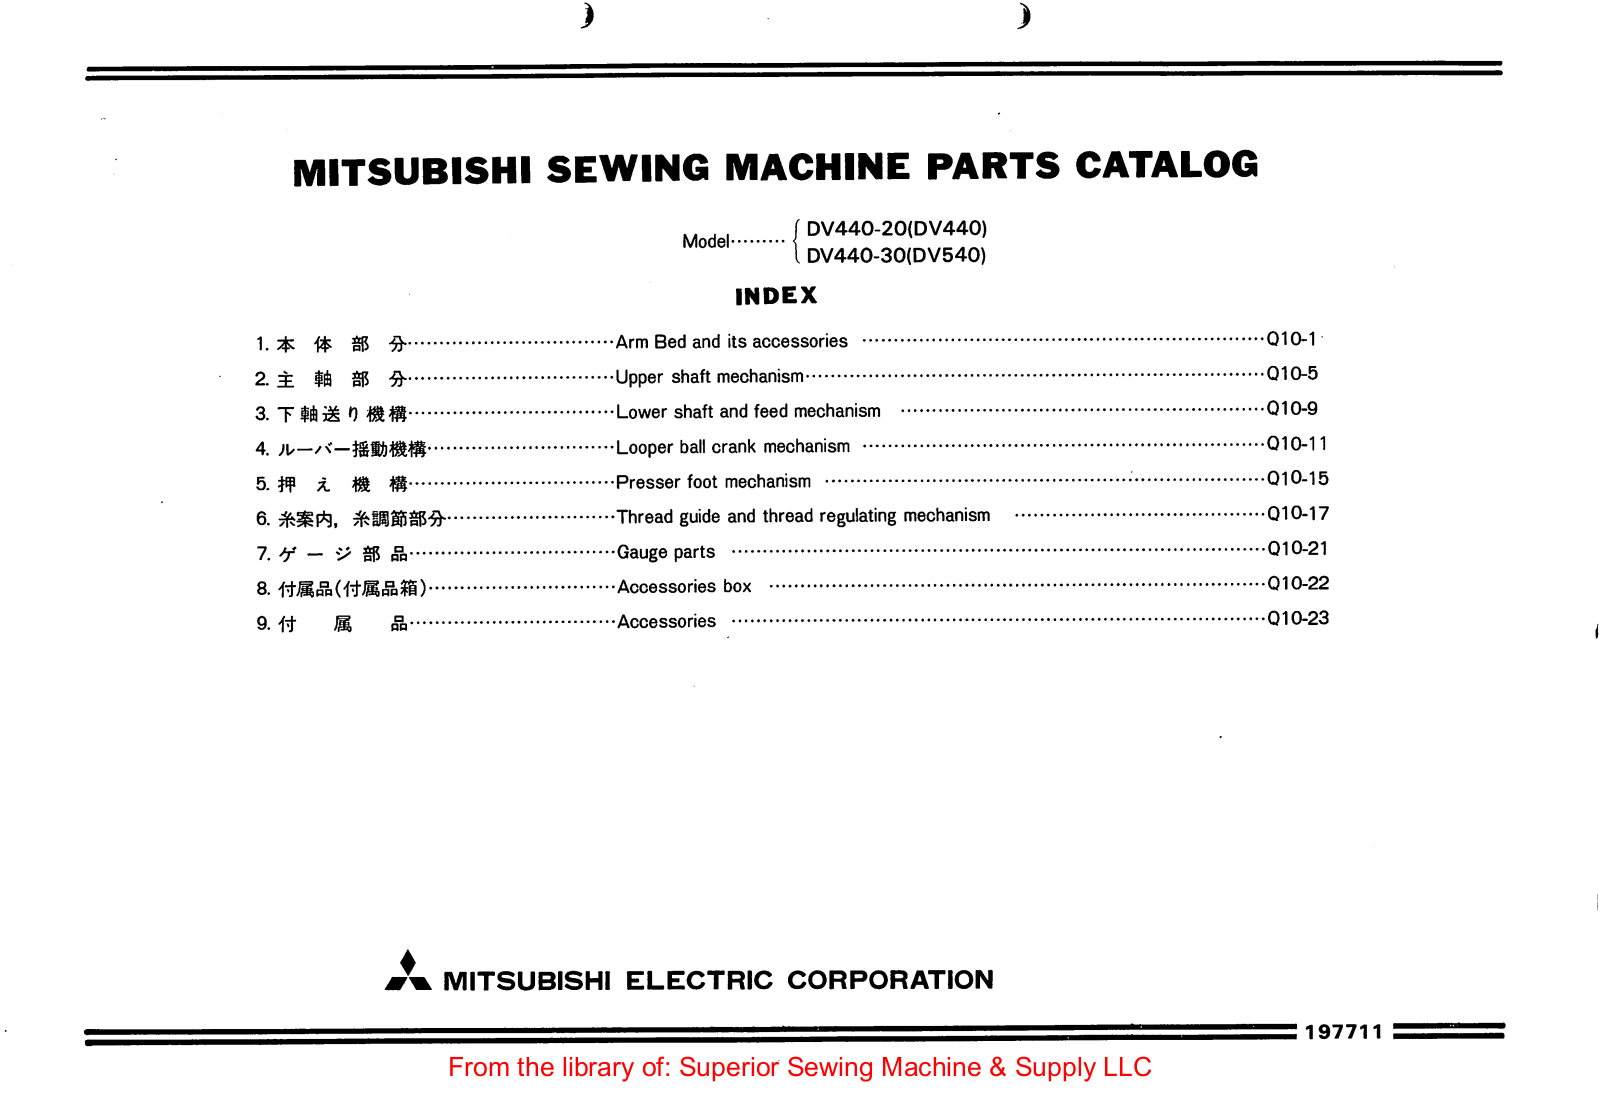 Mitsubishi DV440-20, DV-440, DV440-30, DV540 Manual